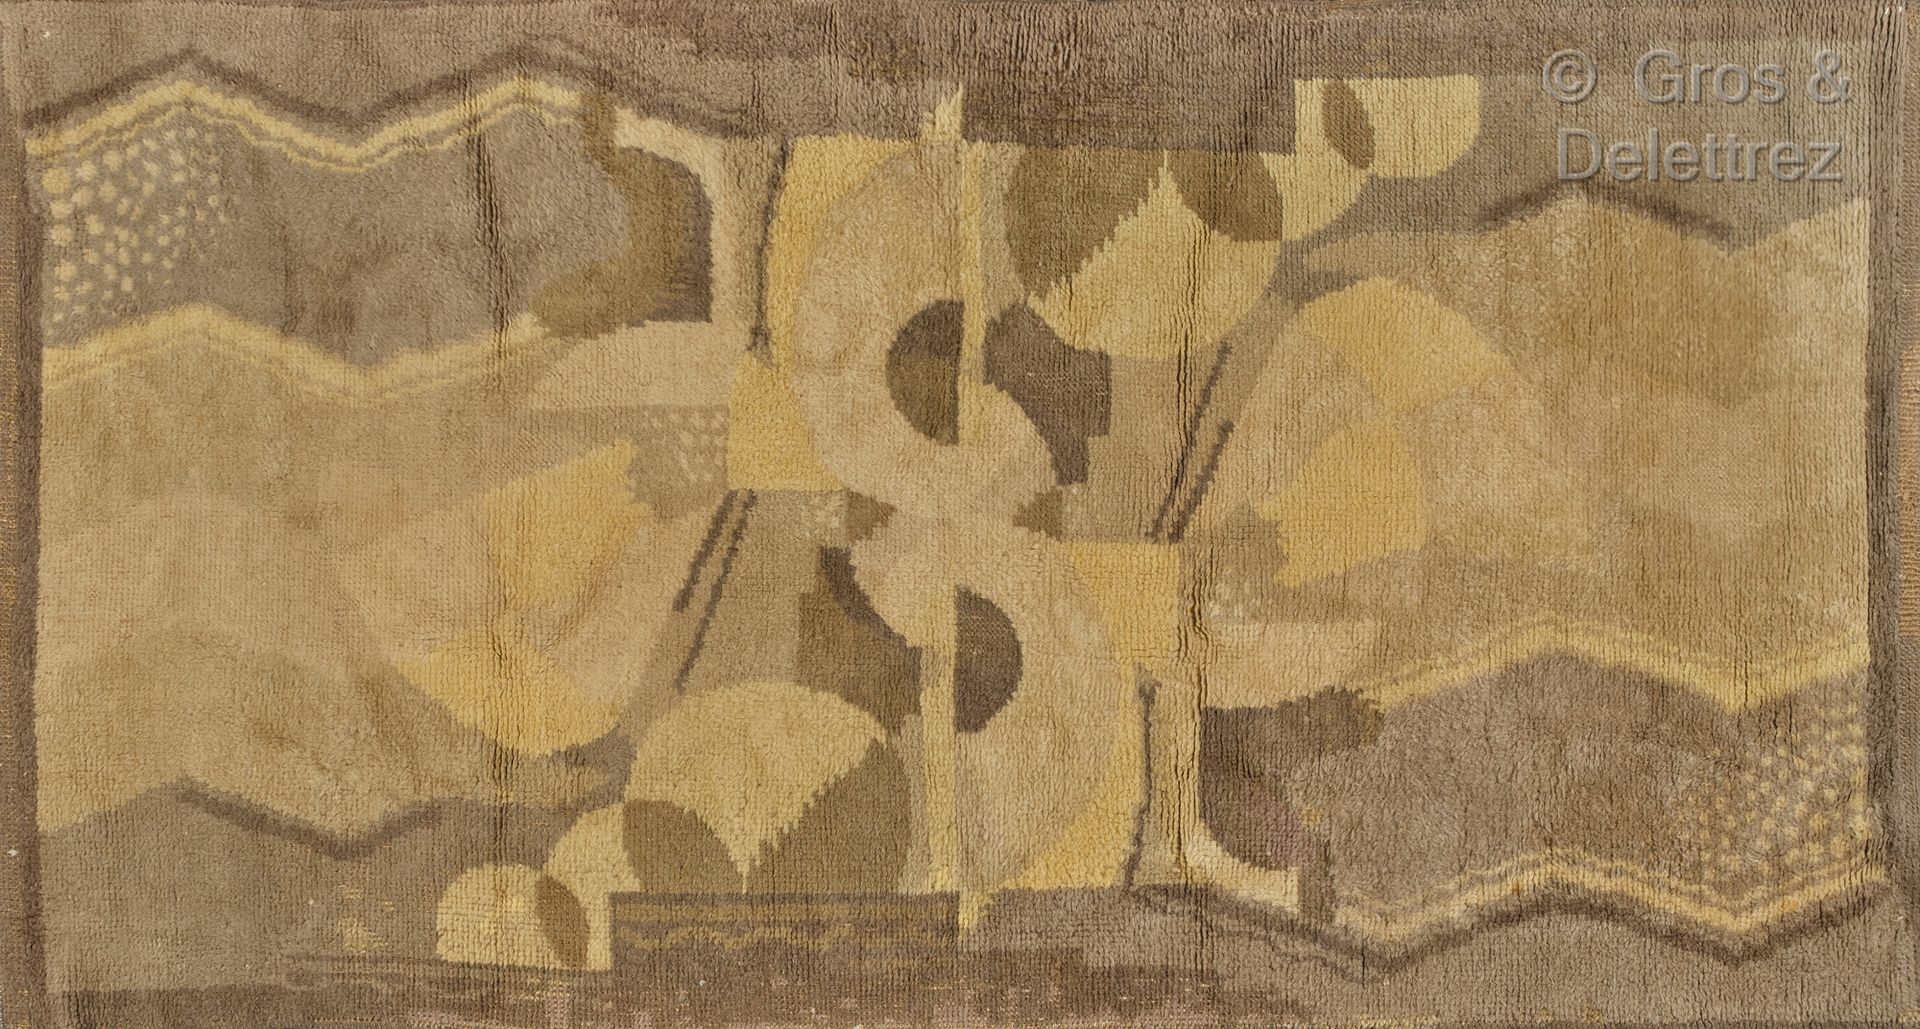 TRAVAIL DES ANNÉES 30 Wollteppich mit geometrischem Dekor.

235 x 125 cm